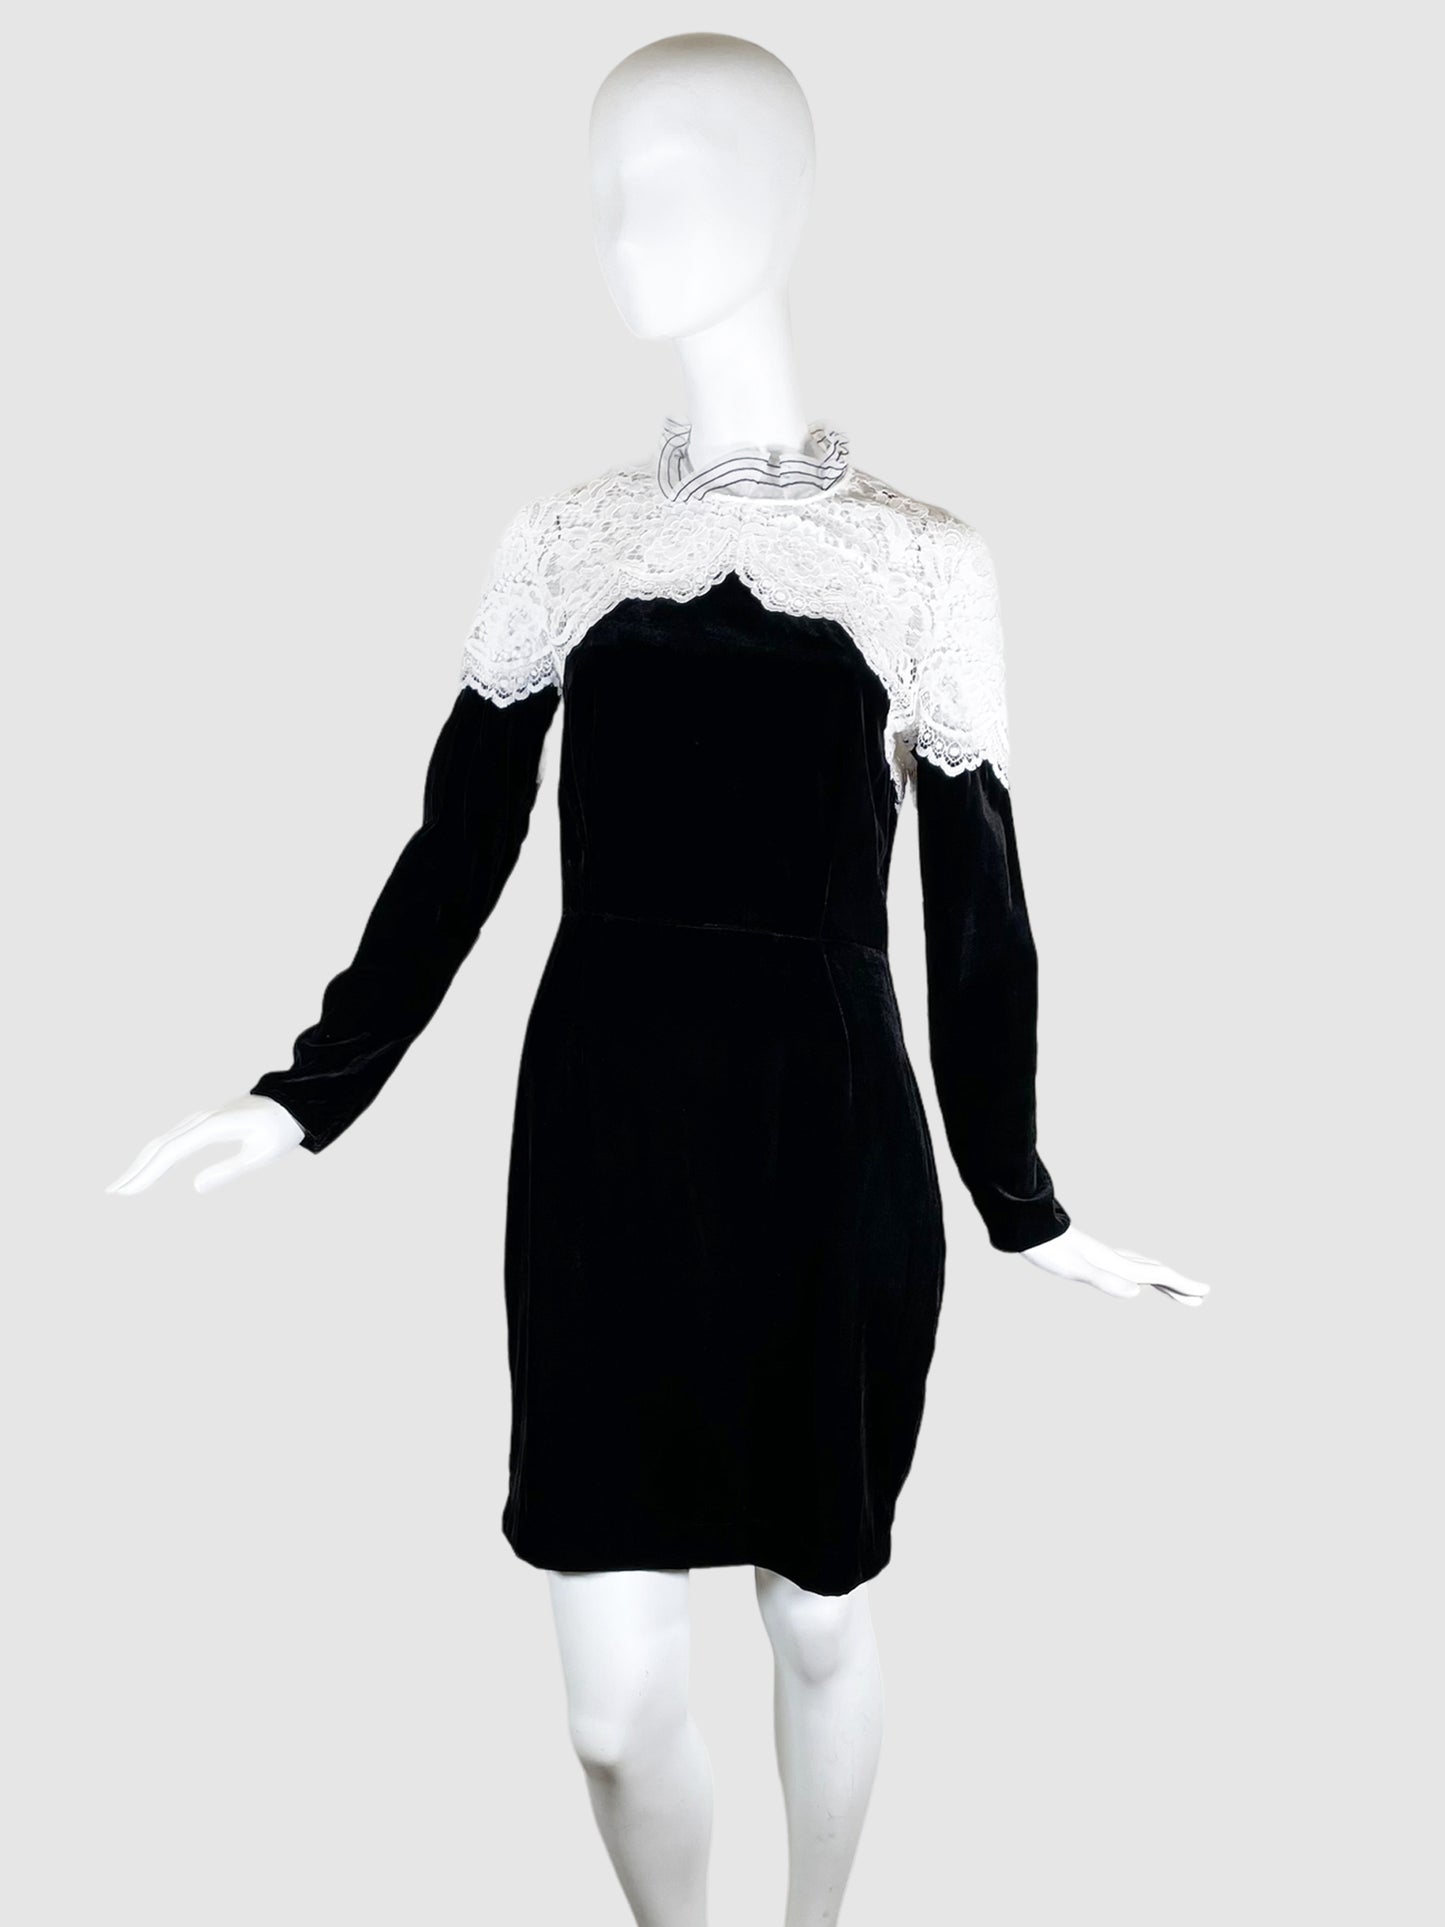 Sandro Black Velvet Lace Dress - Size S